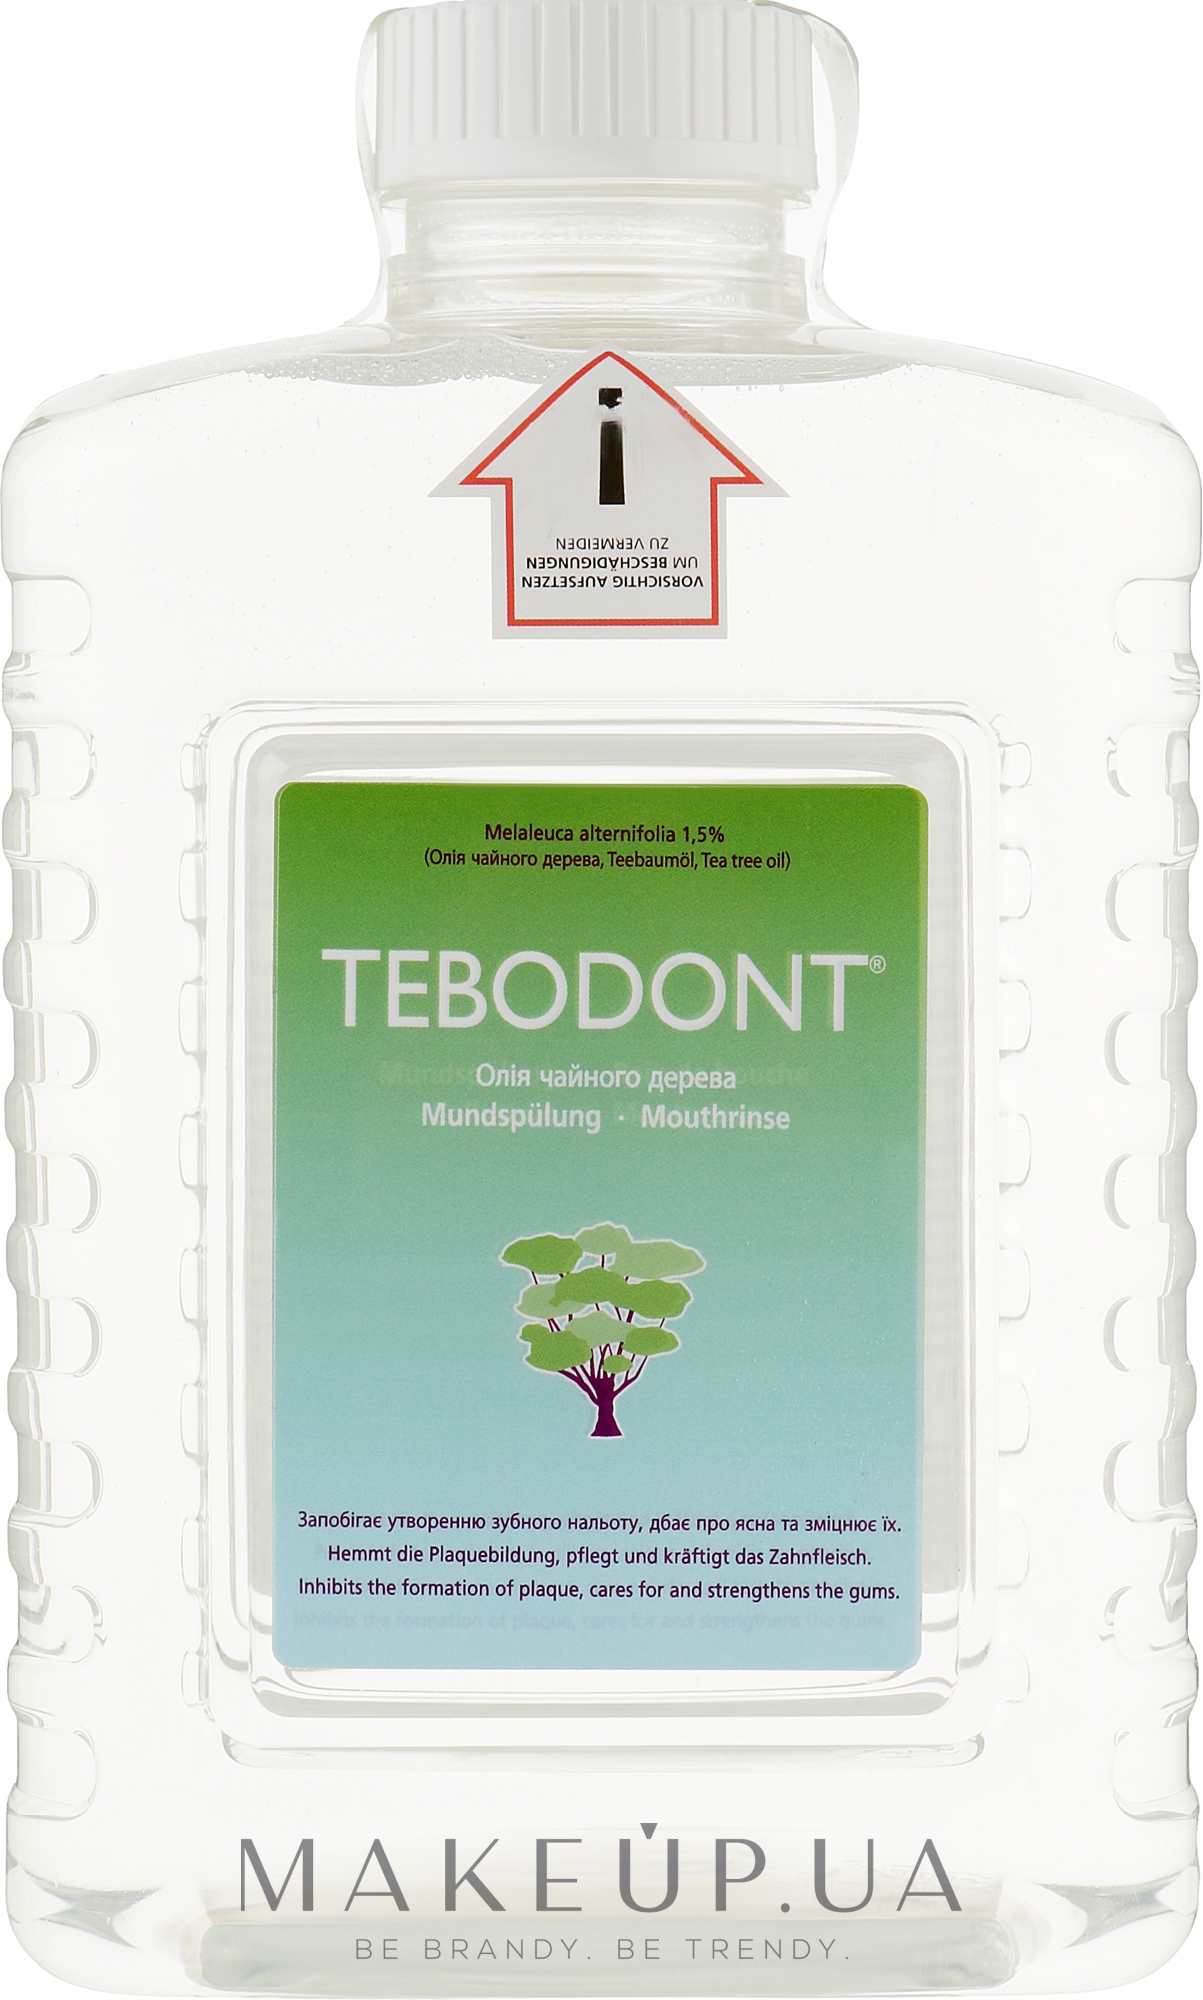 Ополаскиватель полости рта с маслом чайного дерева для диспенсера - Dr. Wild Tebodont (Melaleuca Alternifolia) — фото 1500ml